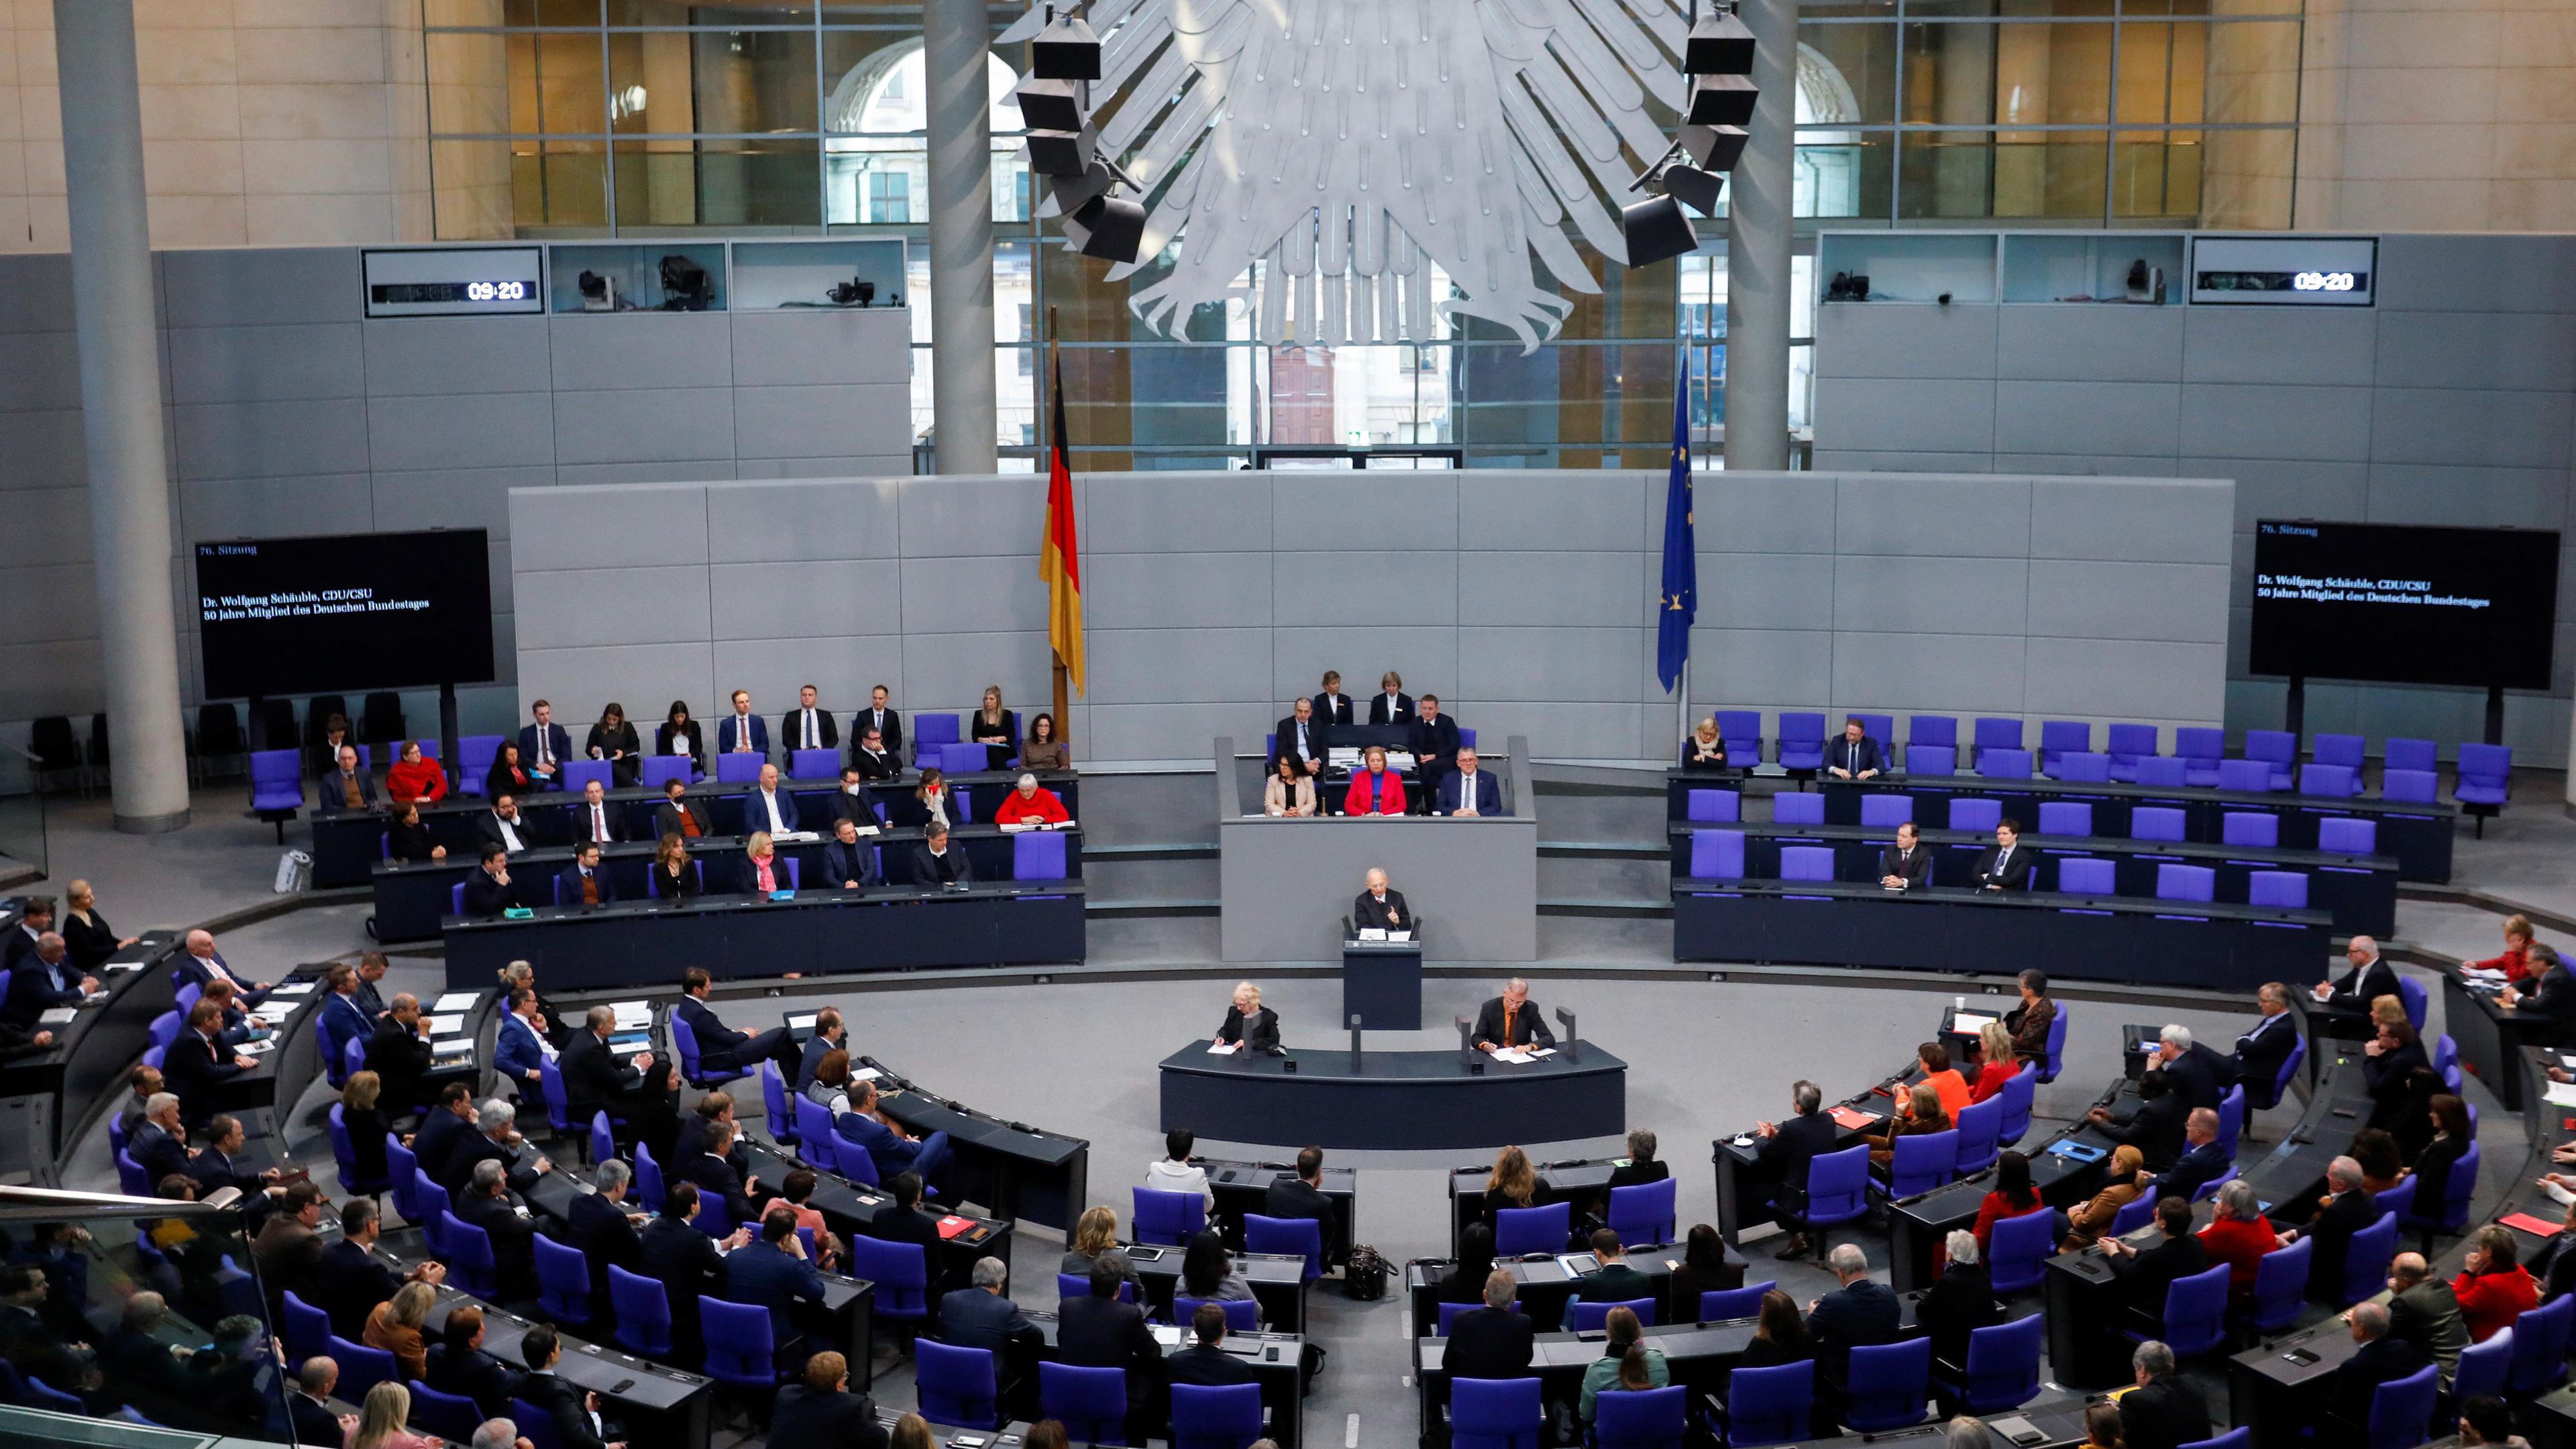 Wolfgang Schäuble (CDU) spricht während einer Bundestagssitzung